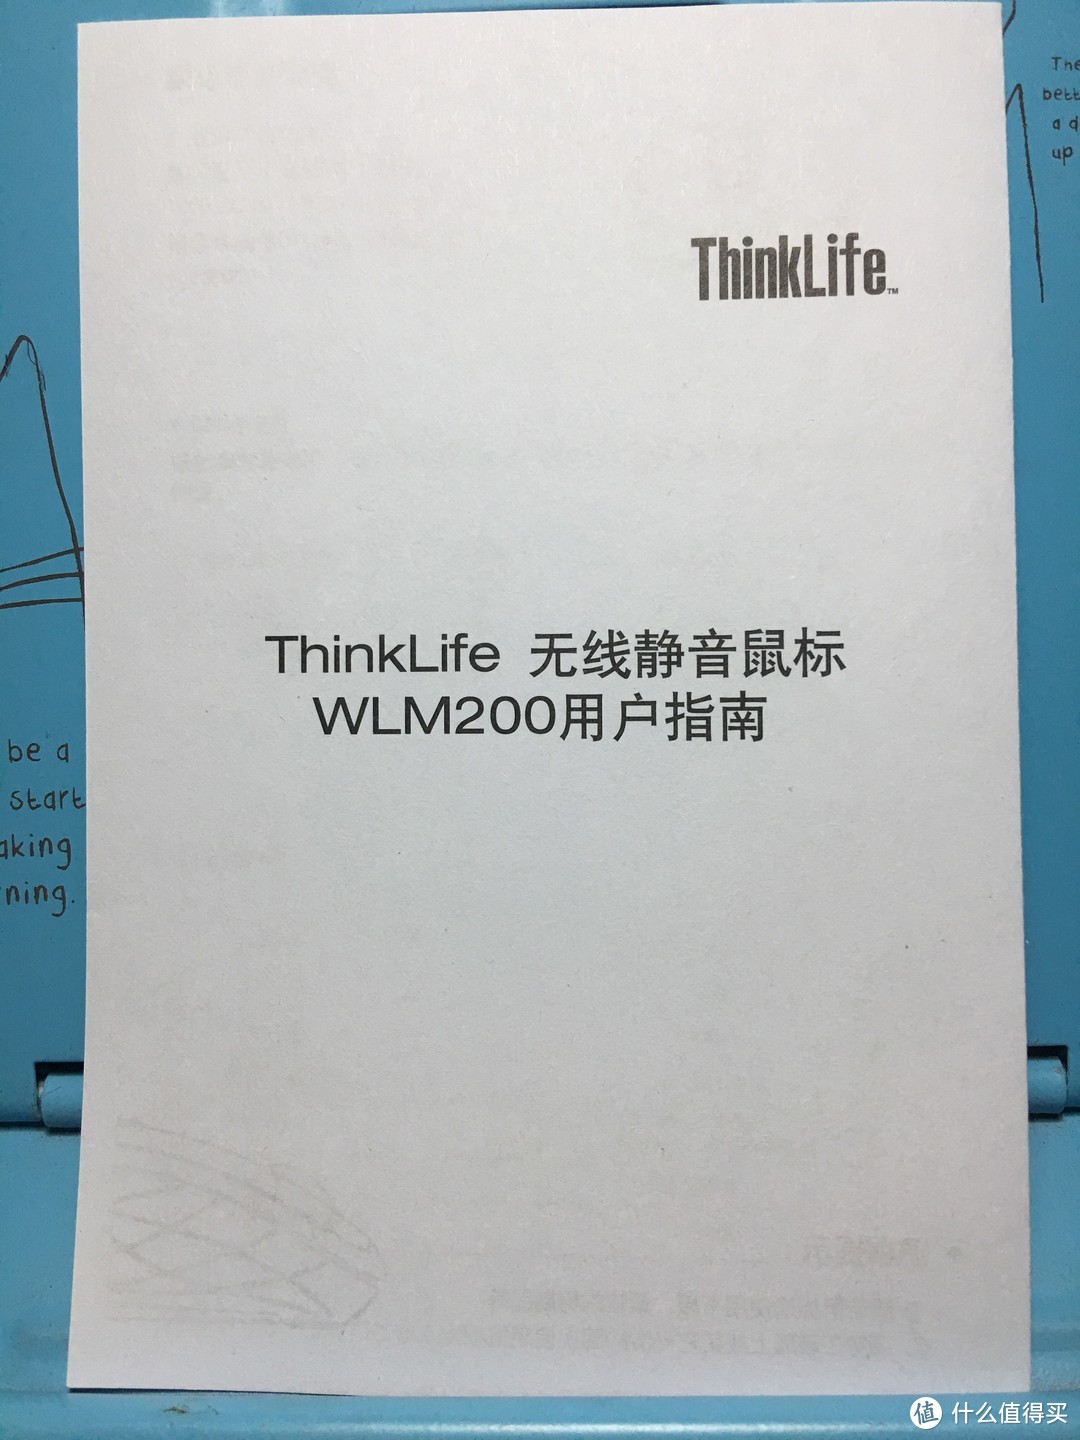 剁主计划-北京#ThinkLife静音无线鼠WLM200 晒物